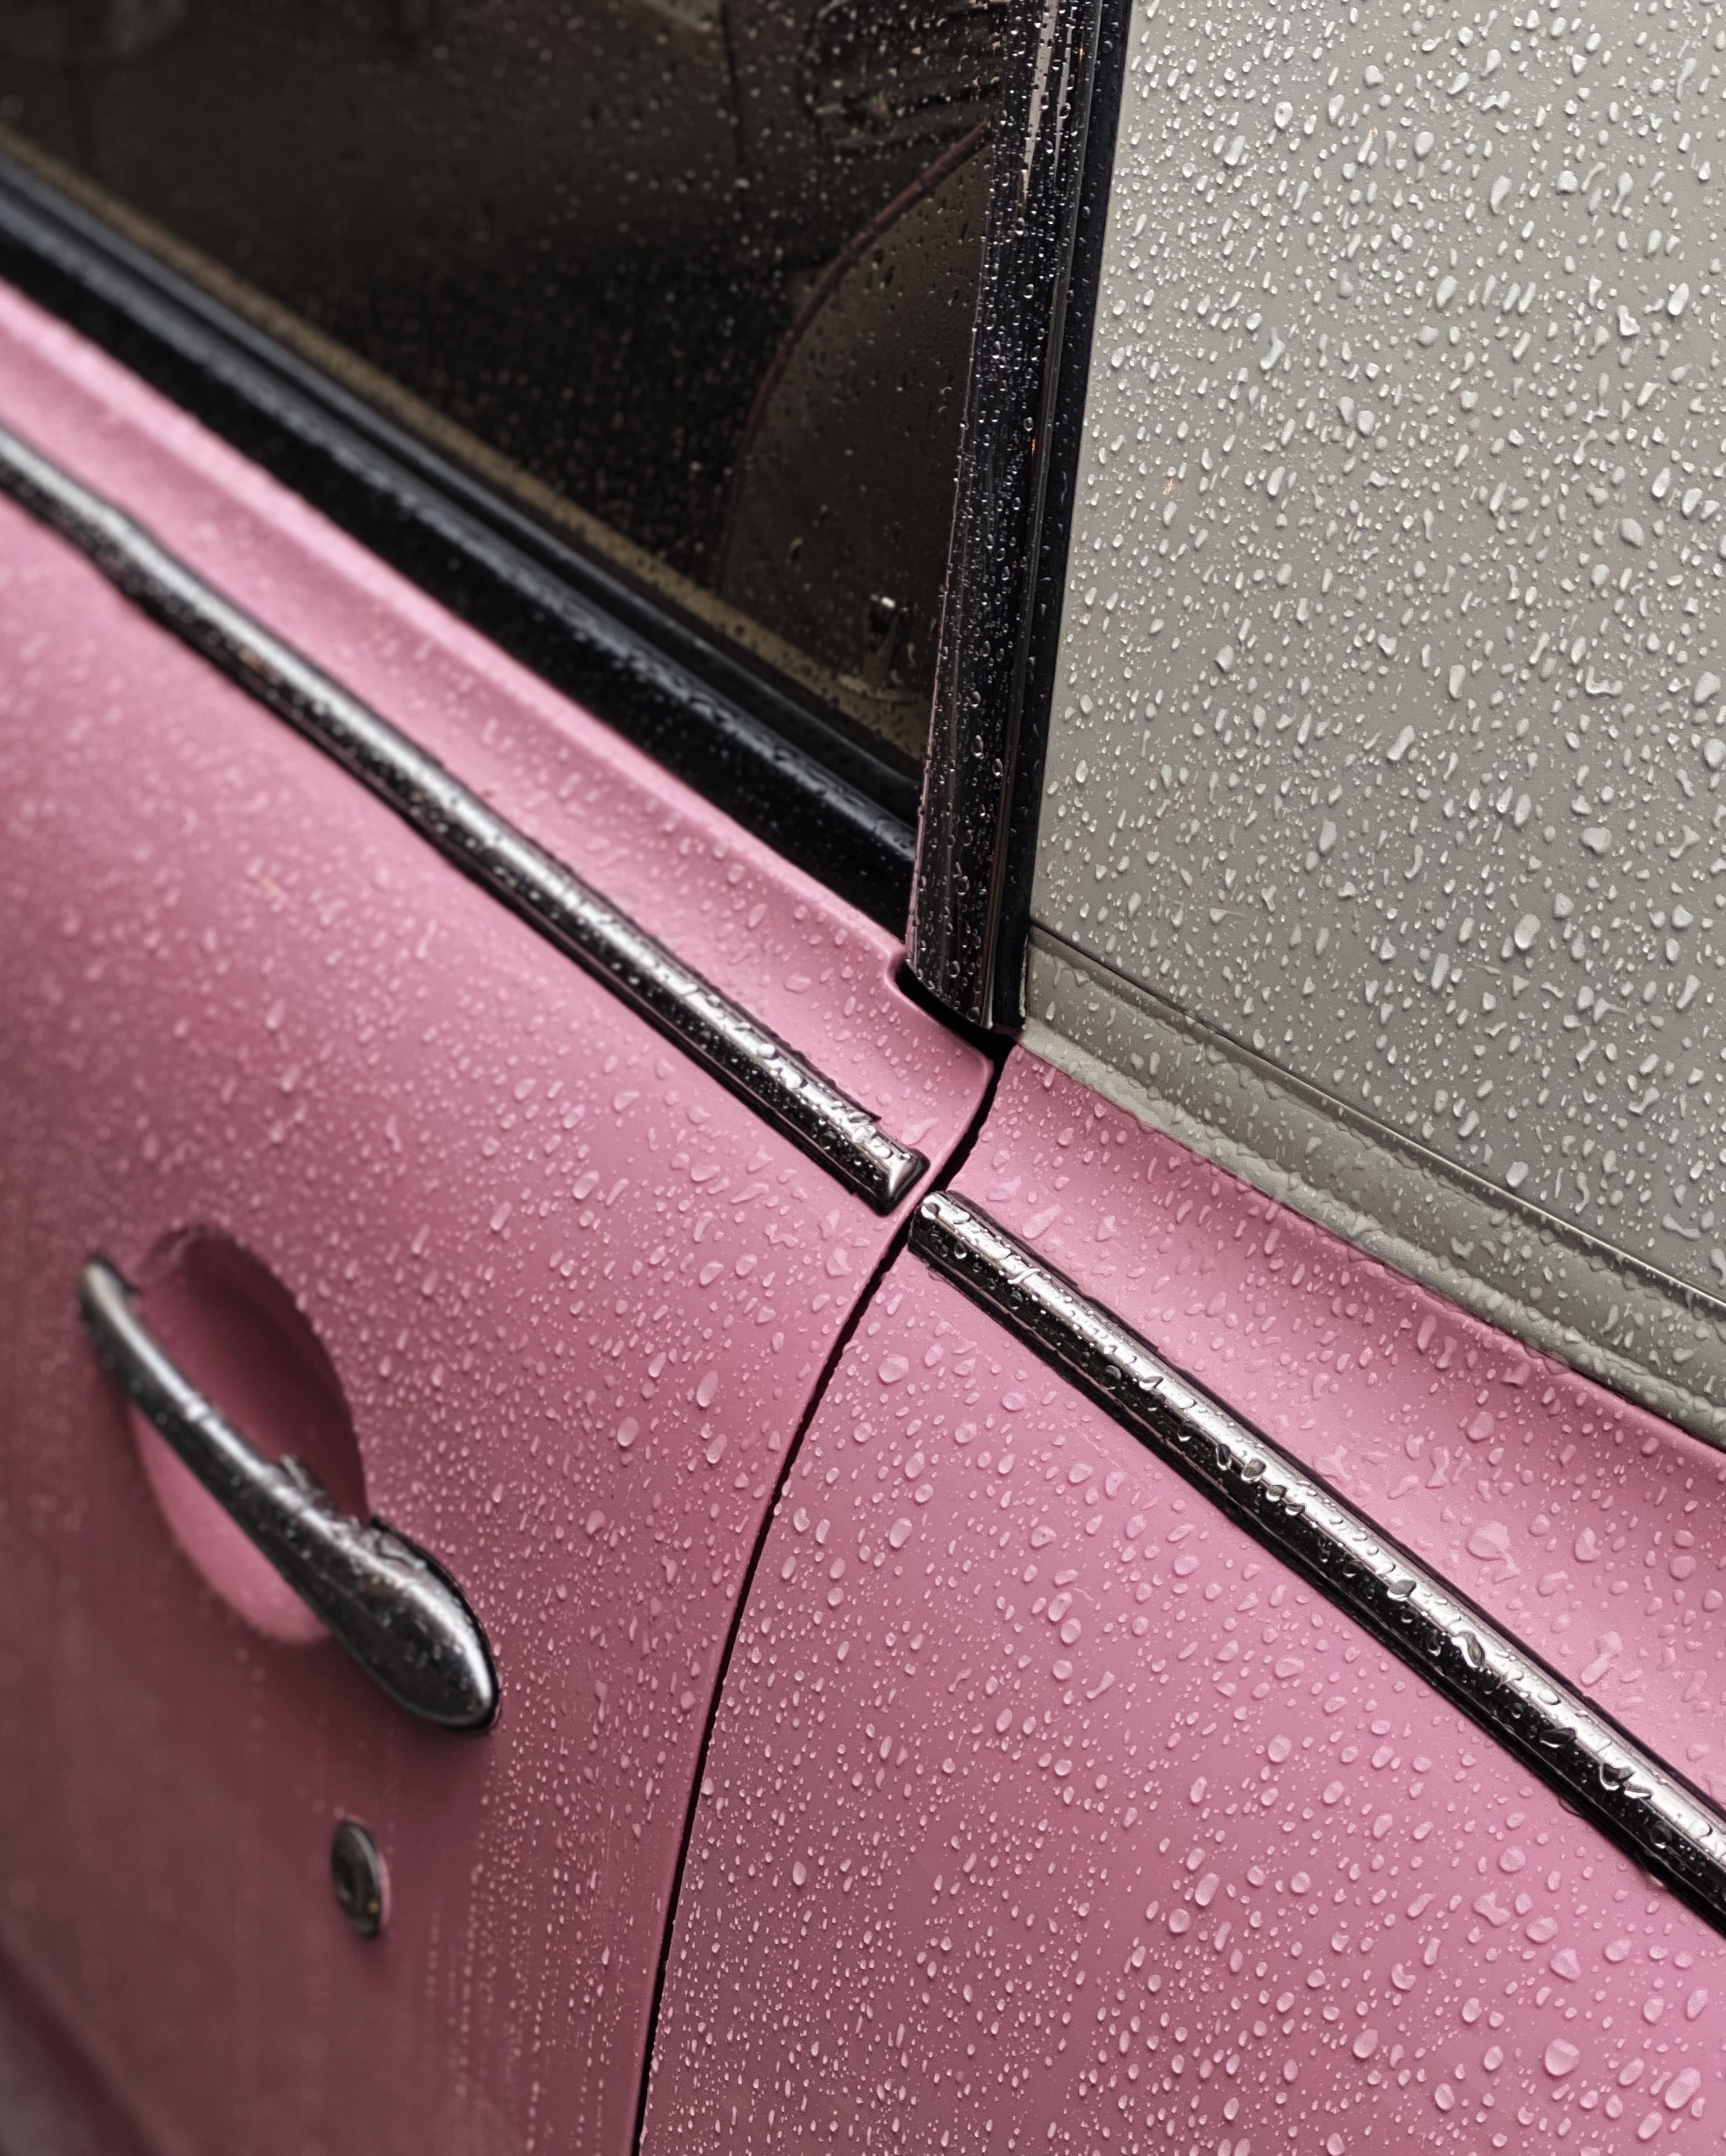 154194 скачать обои розовый, тачки (cars), капли, мокрый, автомобиль - заставки и картинки бесплатно